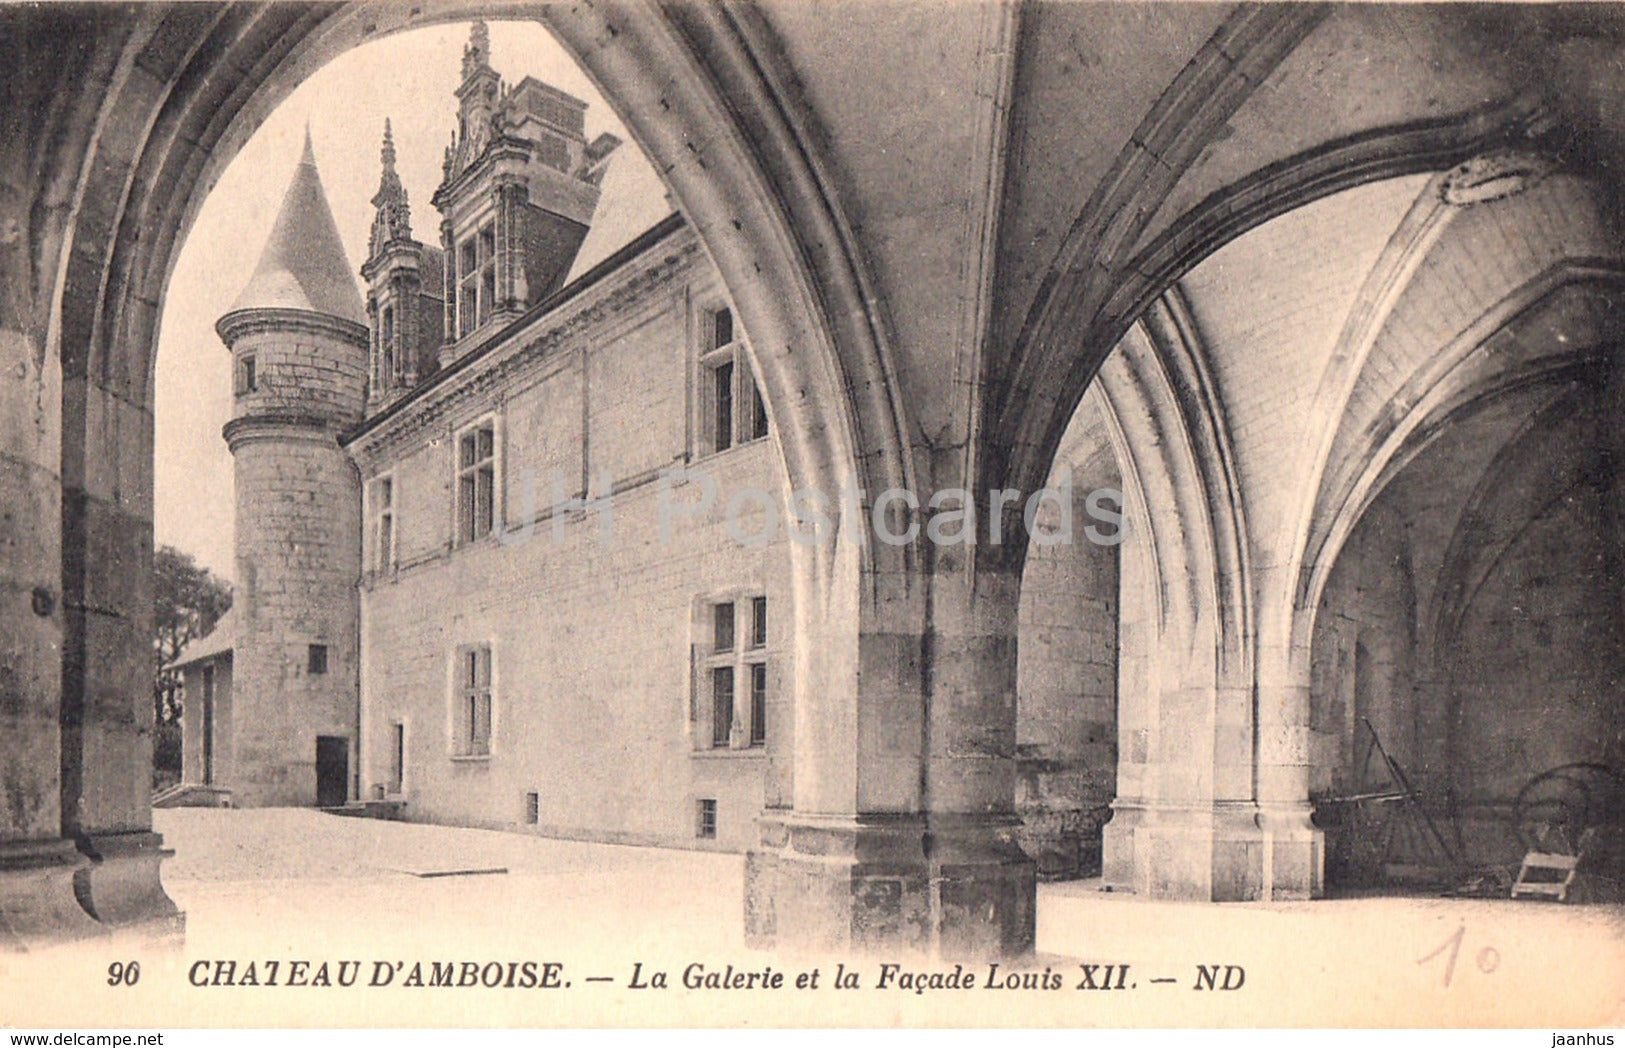 Chateau d' Amboise - La Galerie et la Facade Louis XII - castle - 90 - old postcard - France - unused